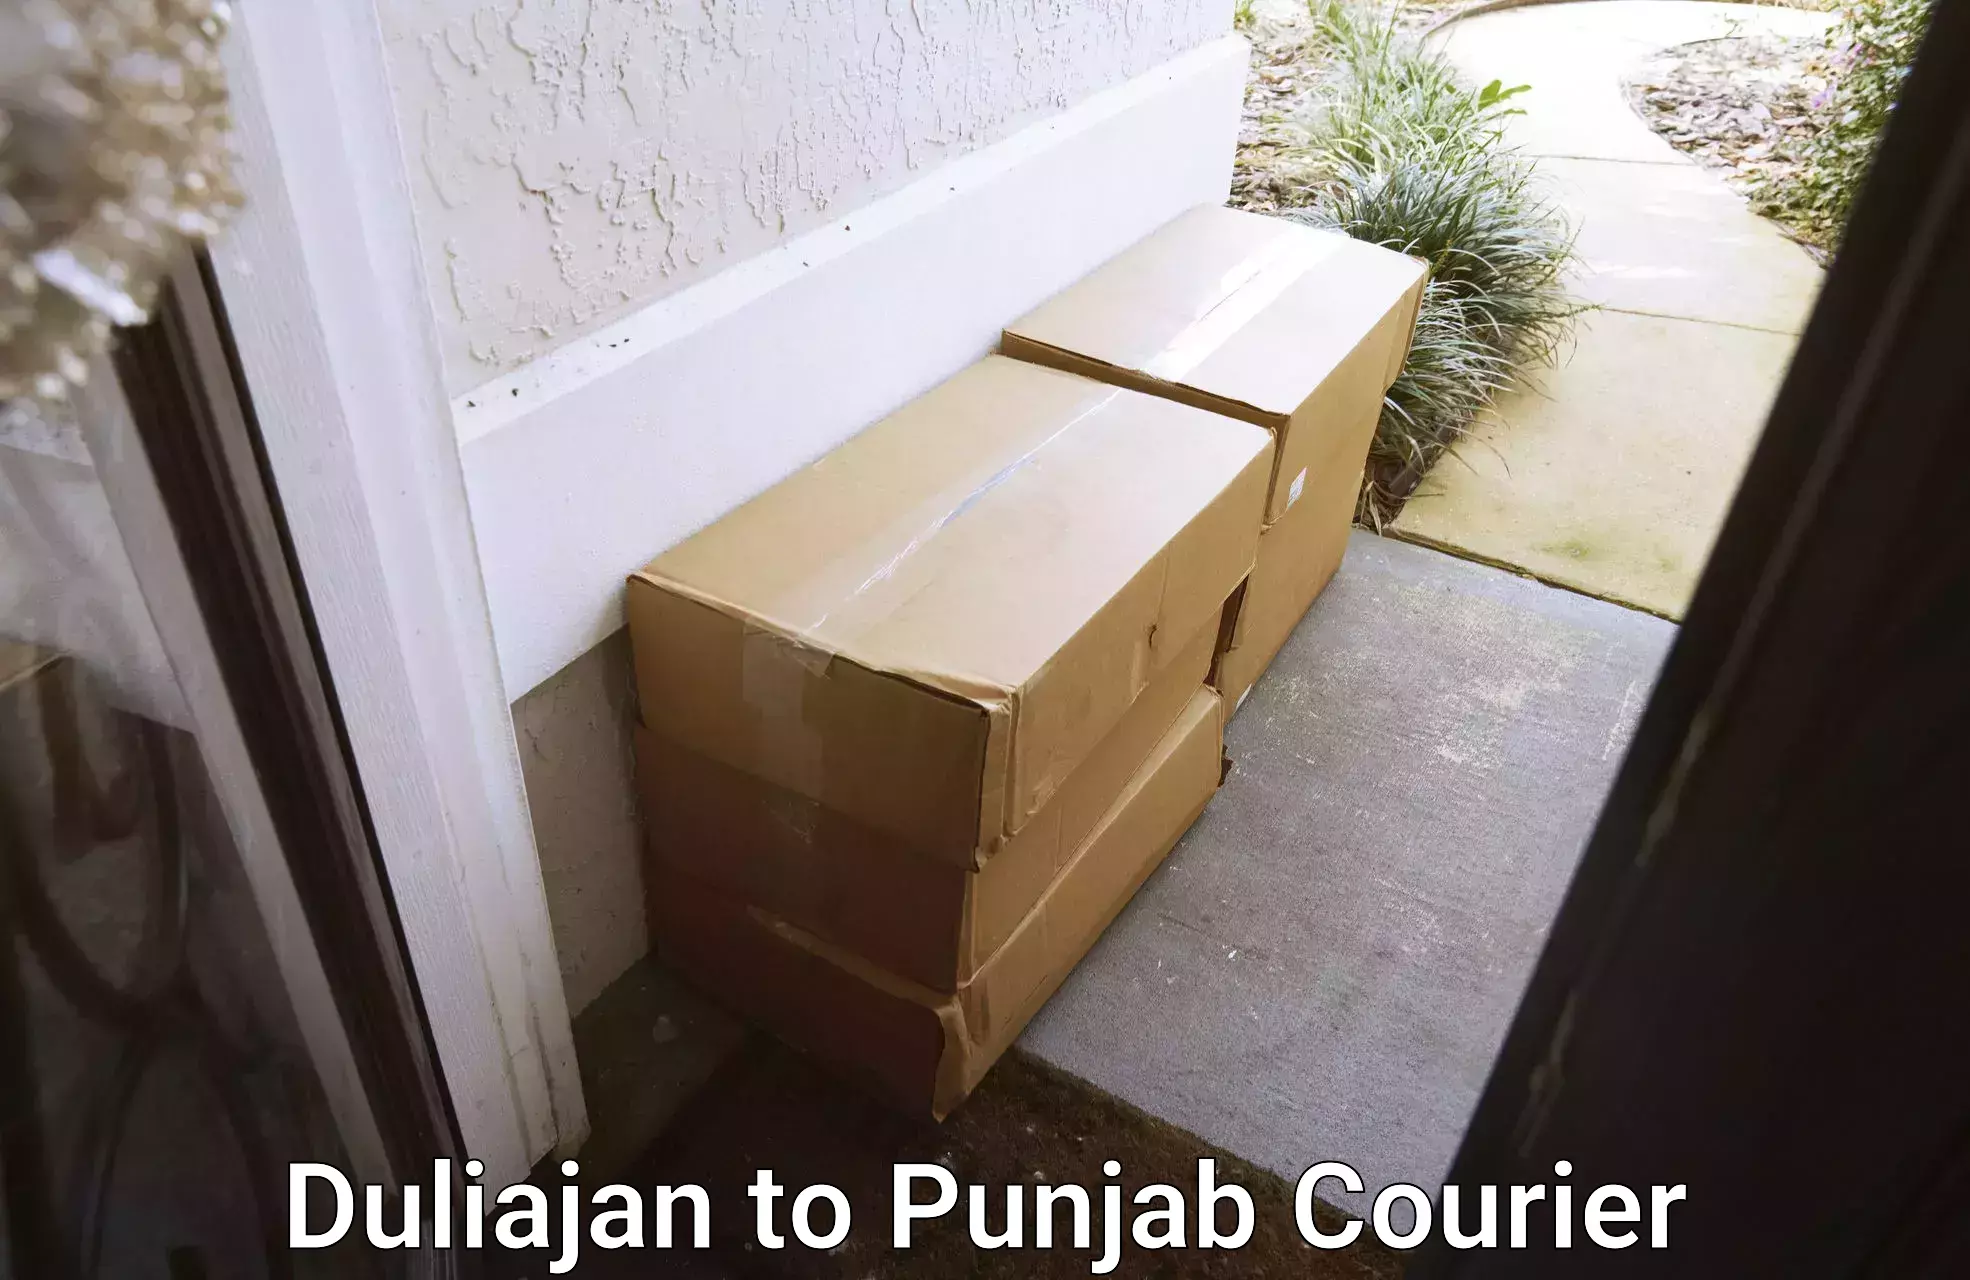 Ground shipping Duliajan to Rupnagar